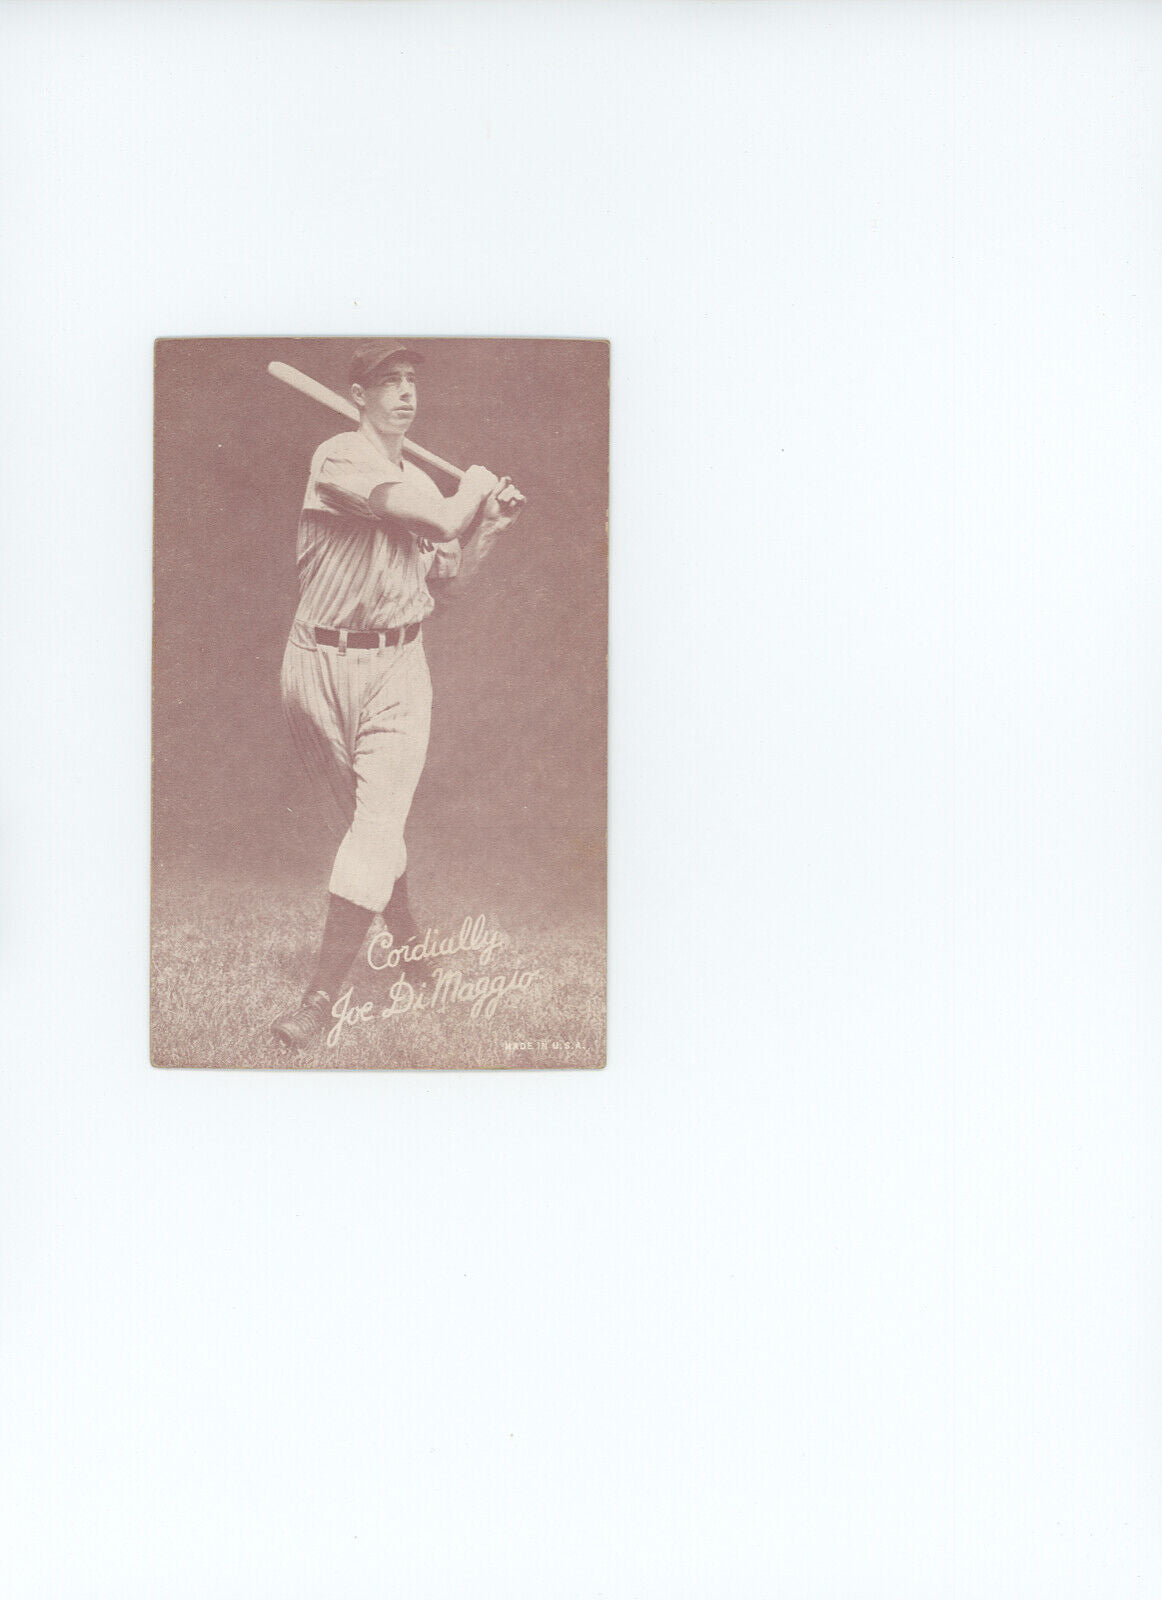 1939-1946 Joe DiMaggio Salutation Exhibit Card. New York Yankees